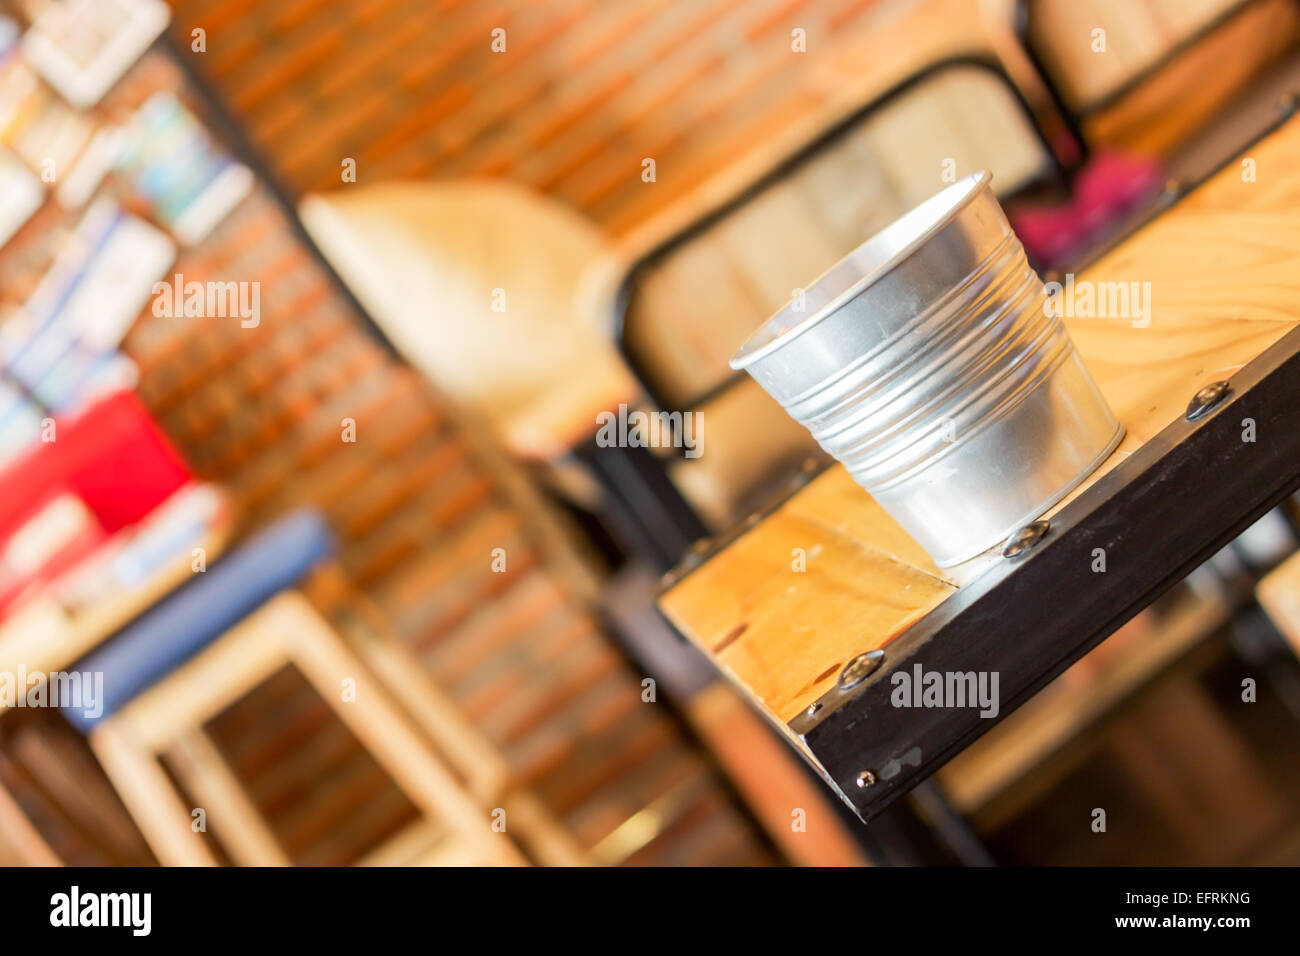 Benna vuota sul tavolo della caffetteria, stock photo Foto Stock